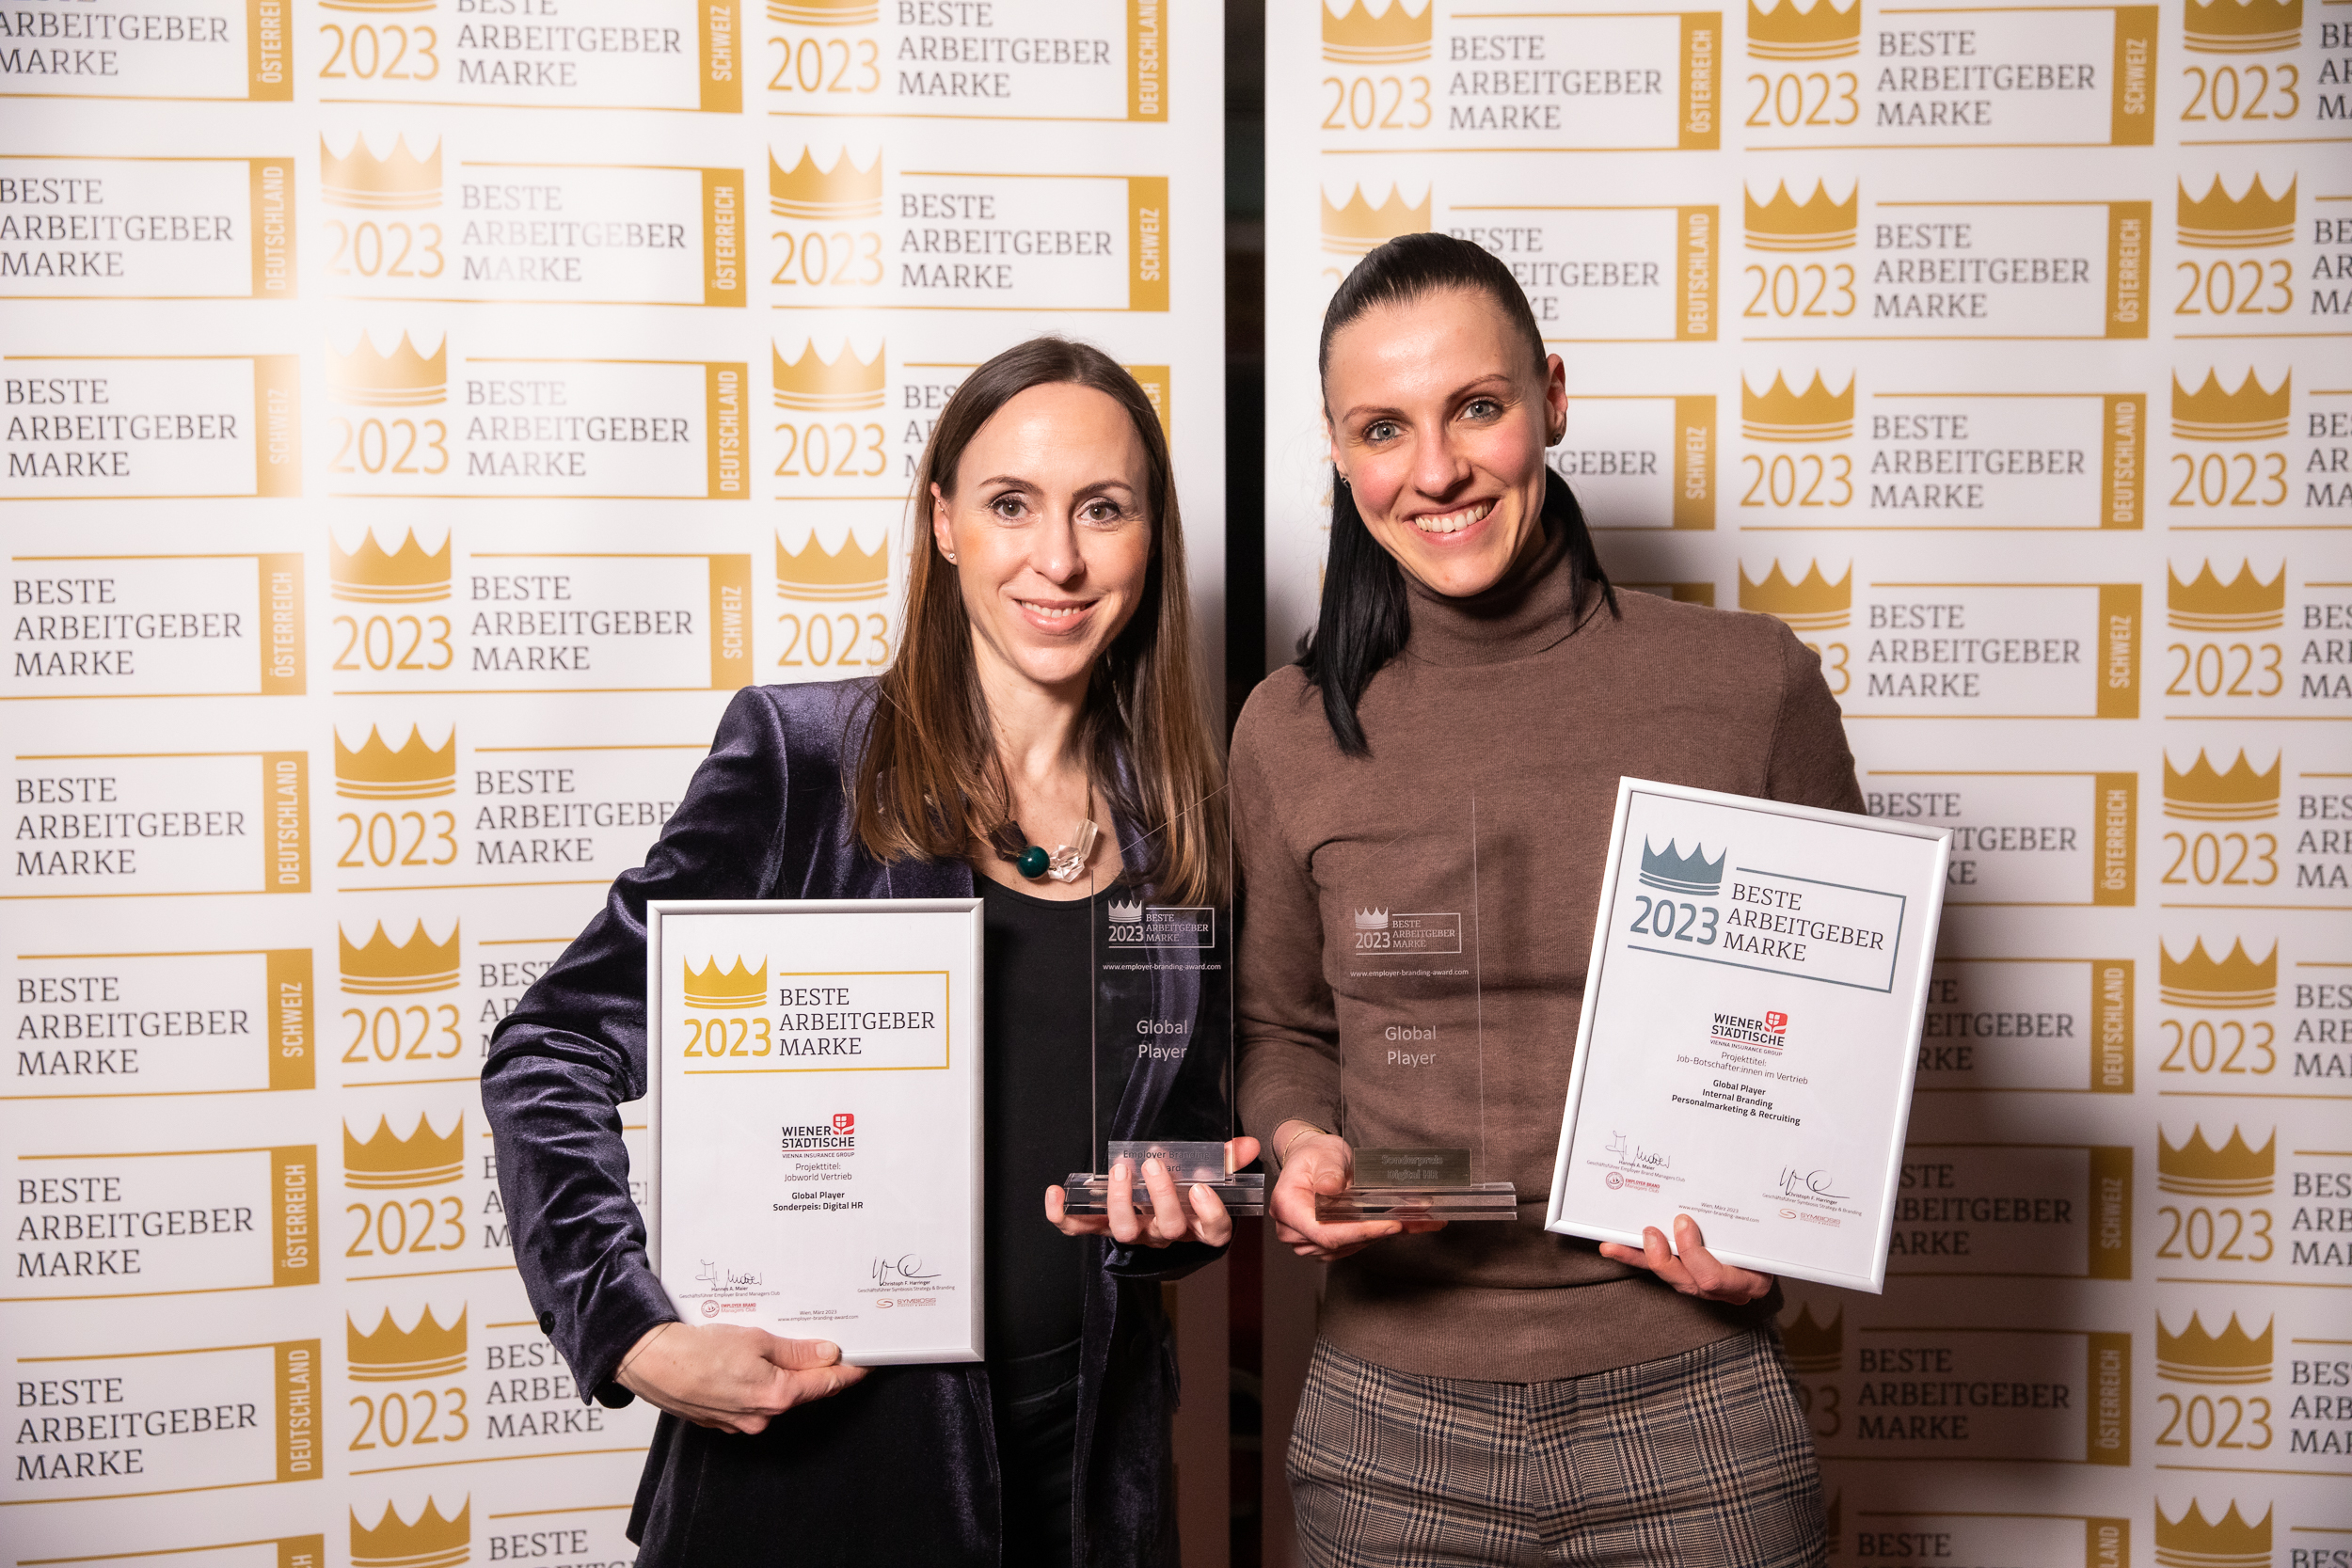 Wiener Städtische gewinnt Employer Branding Award in Gold & Silber